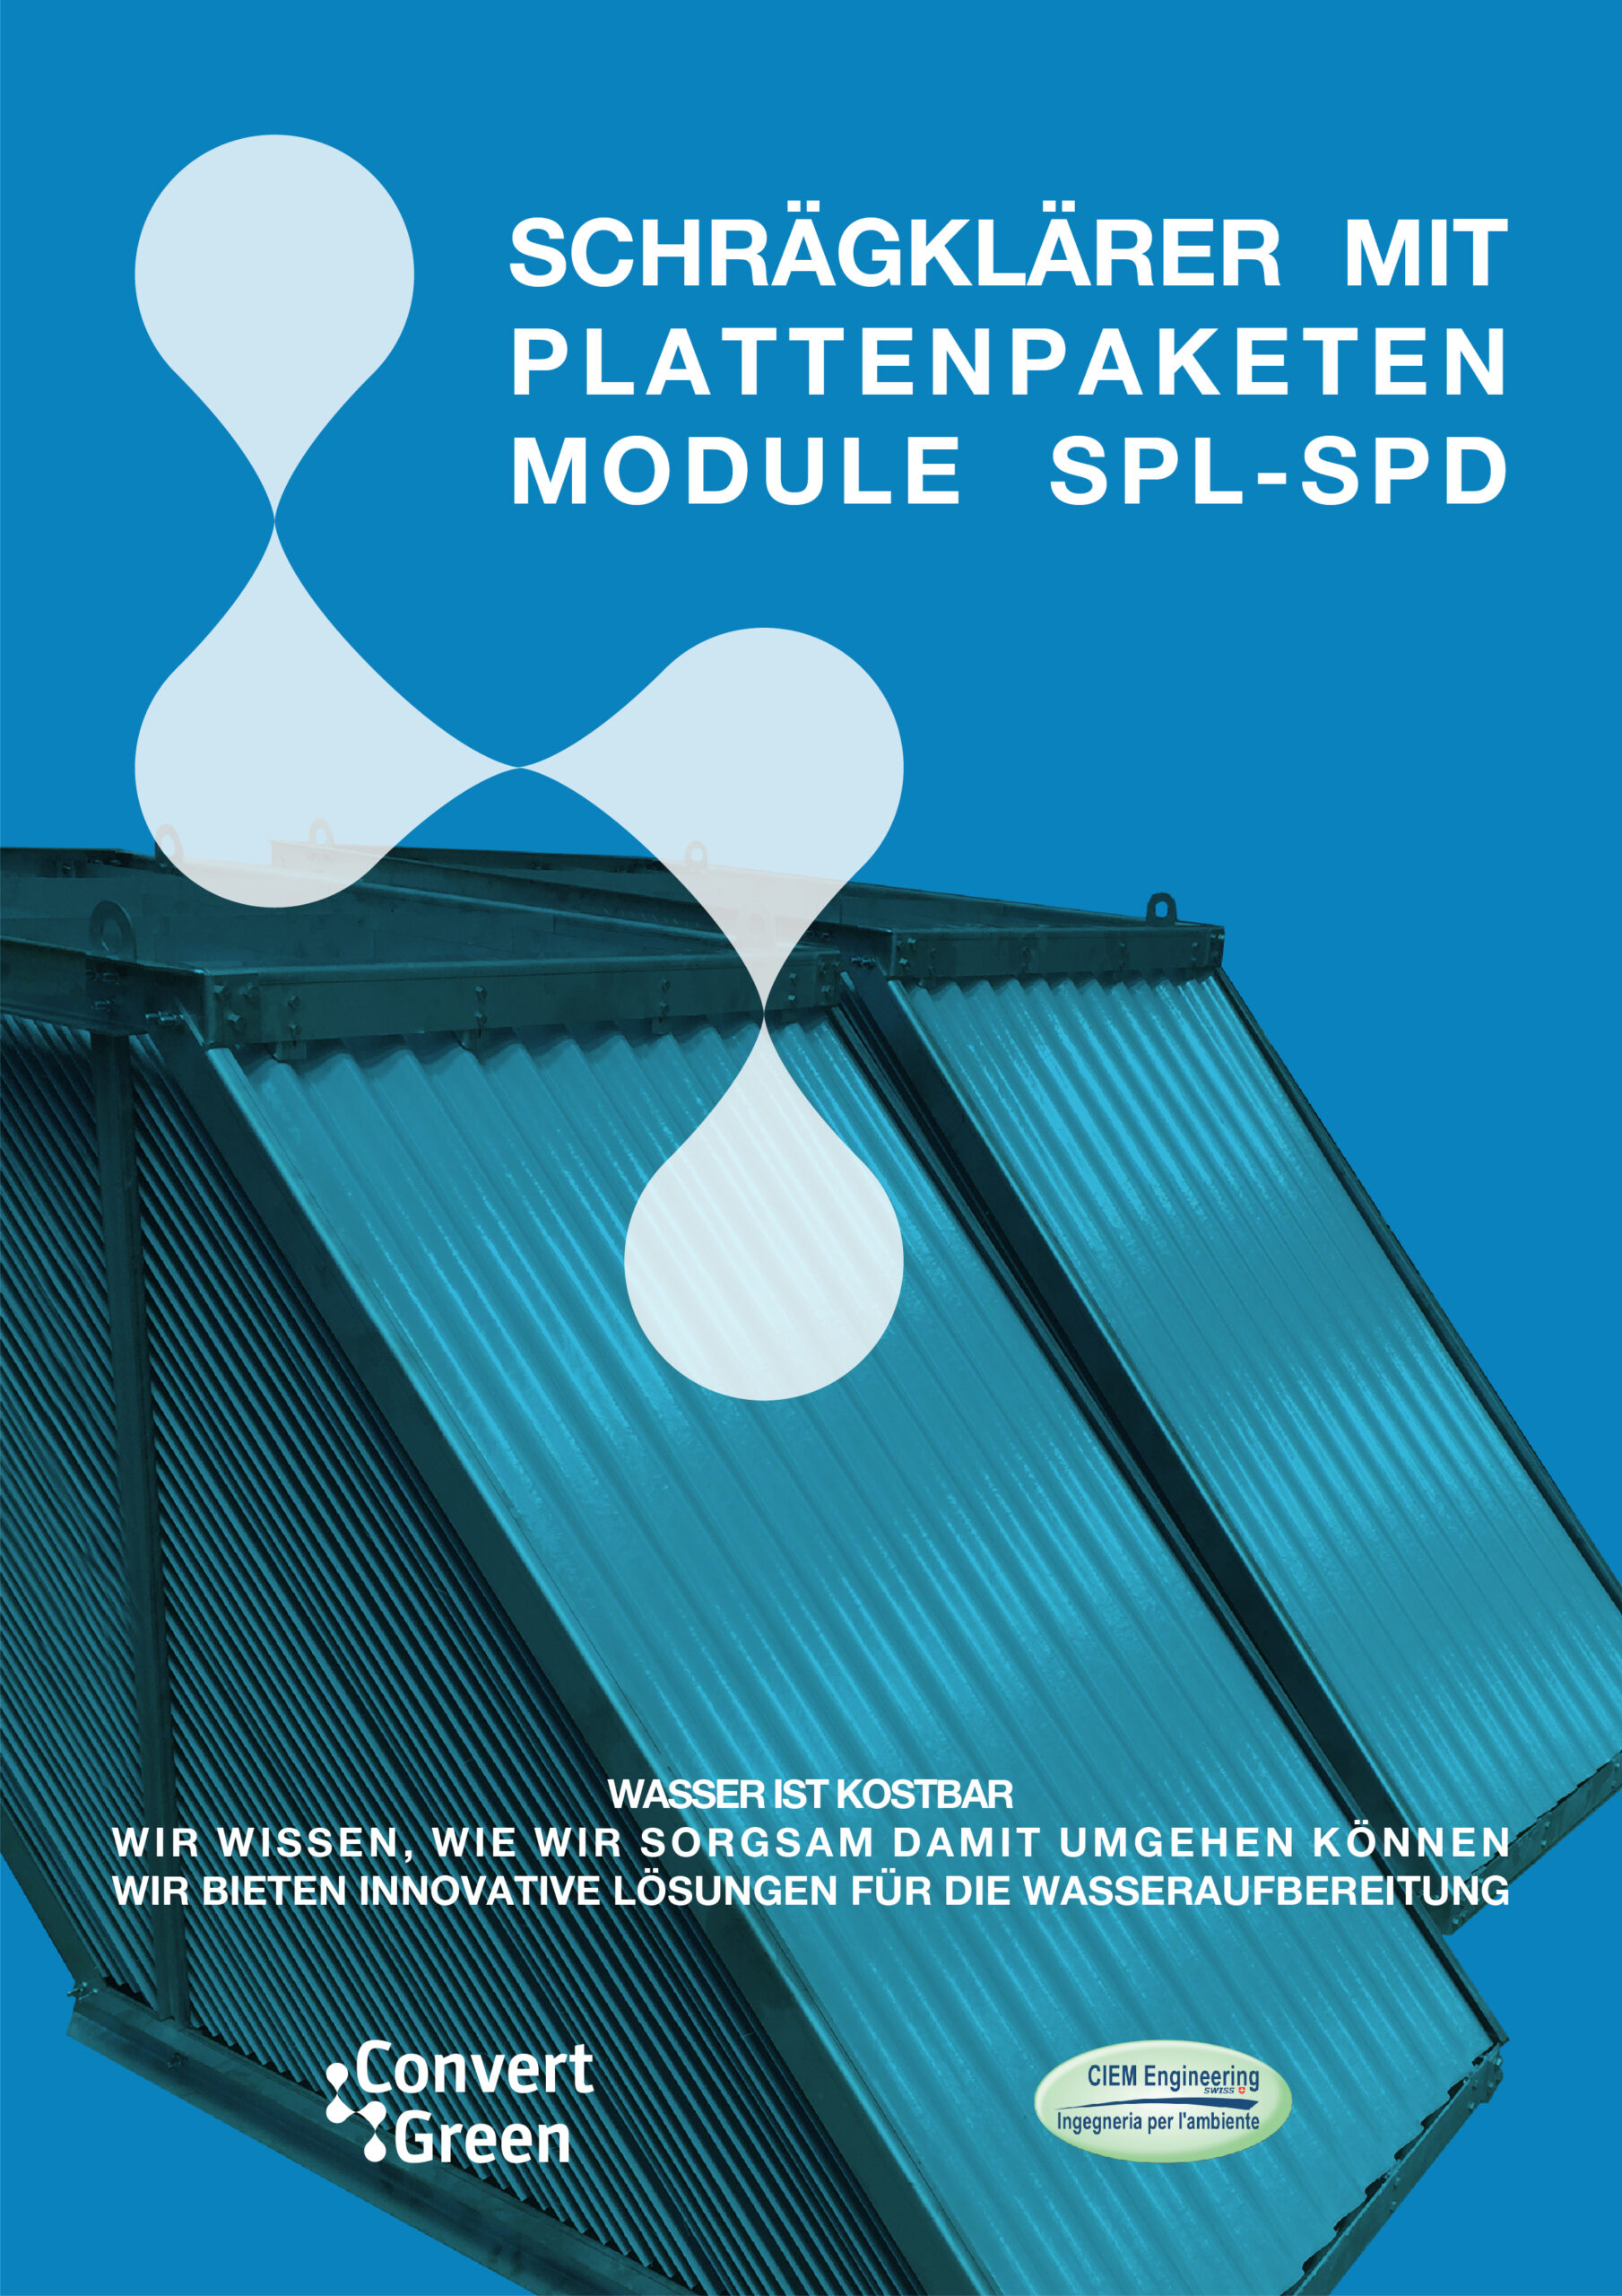 Schragklarer Mit Plattenpaketen Module SPL SPD